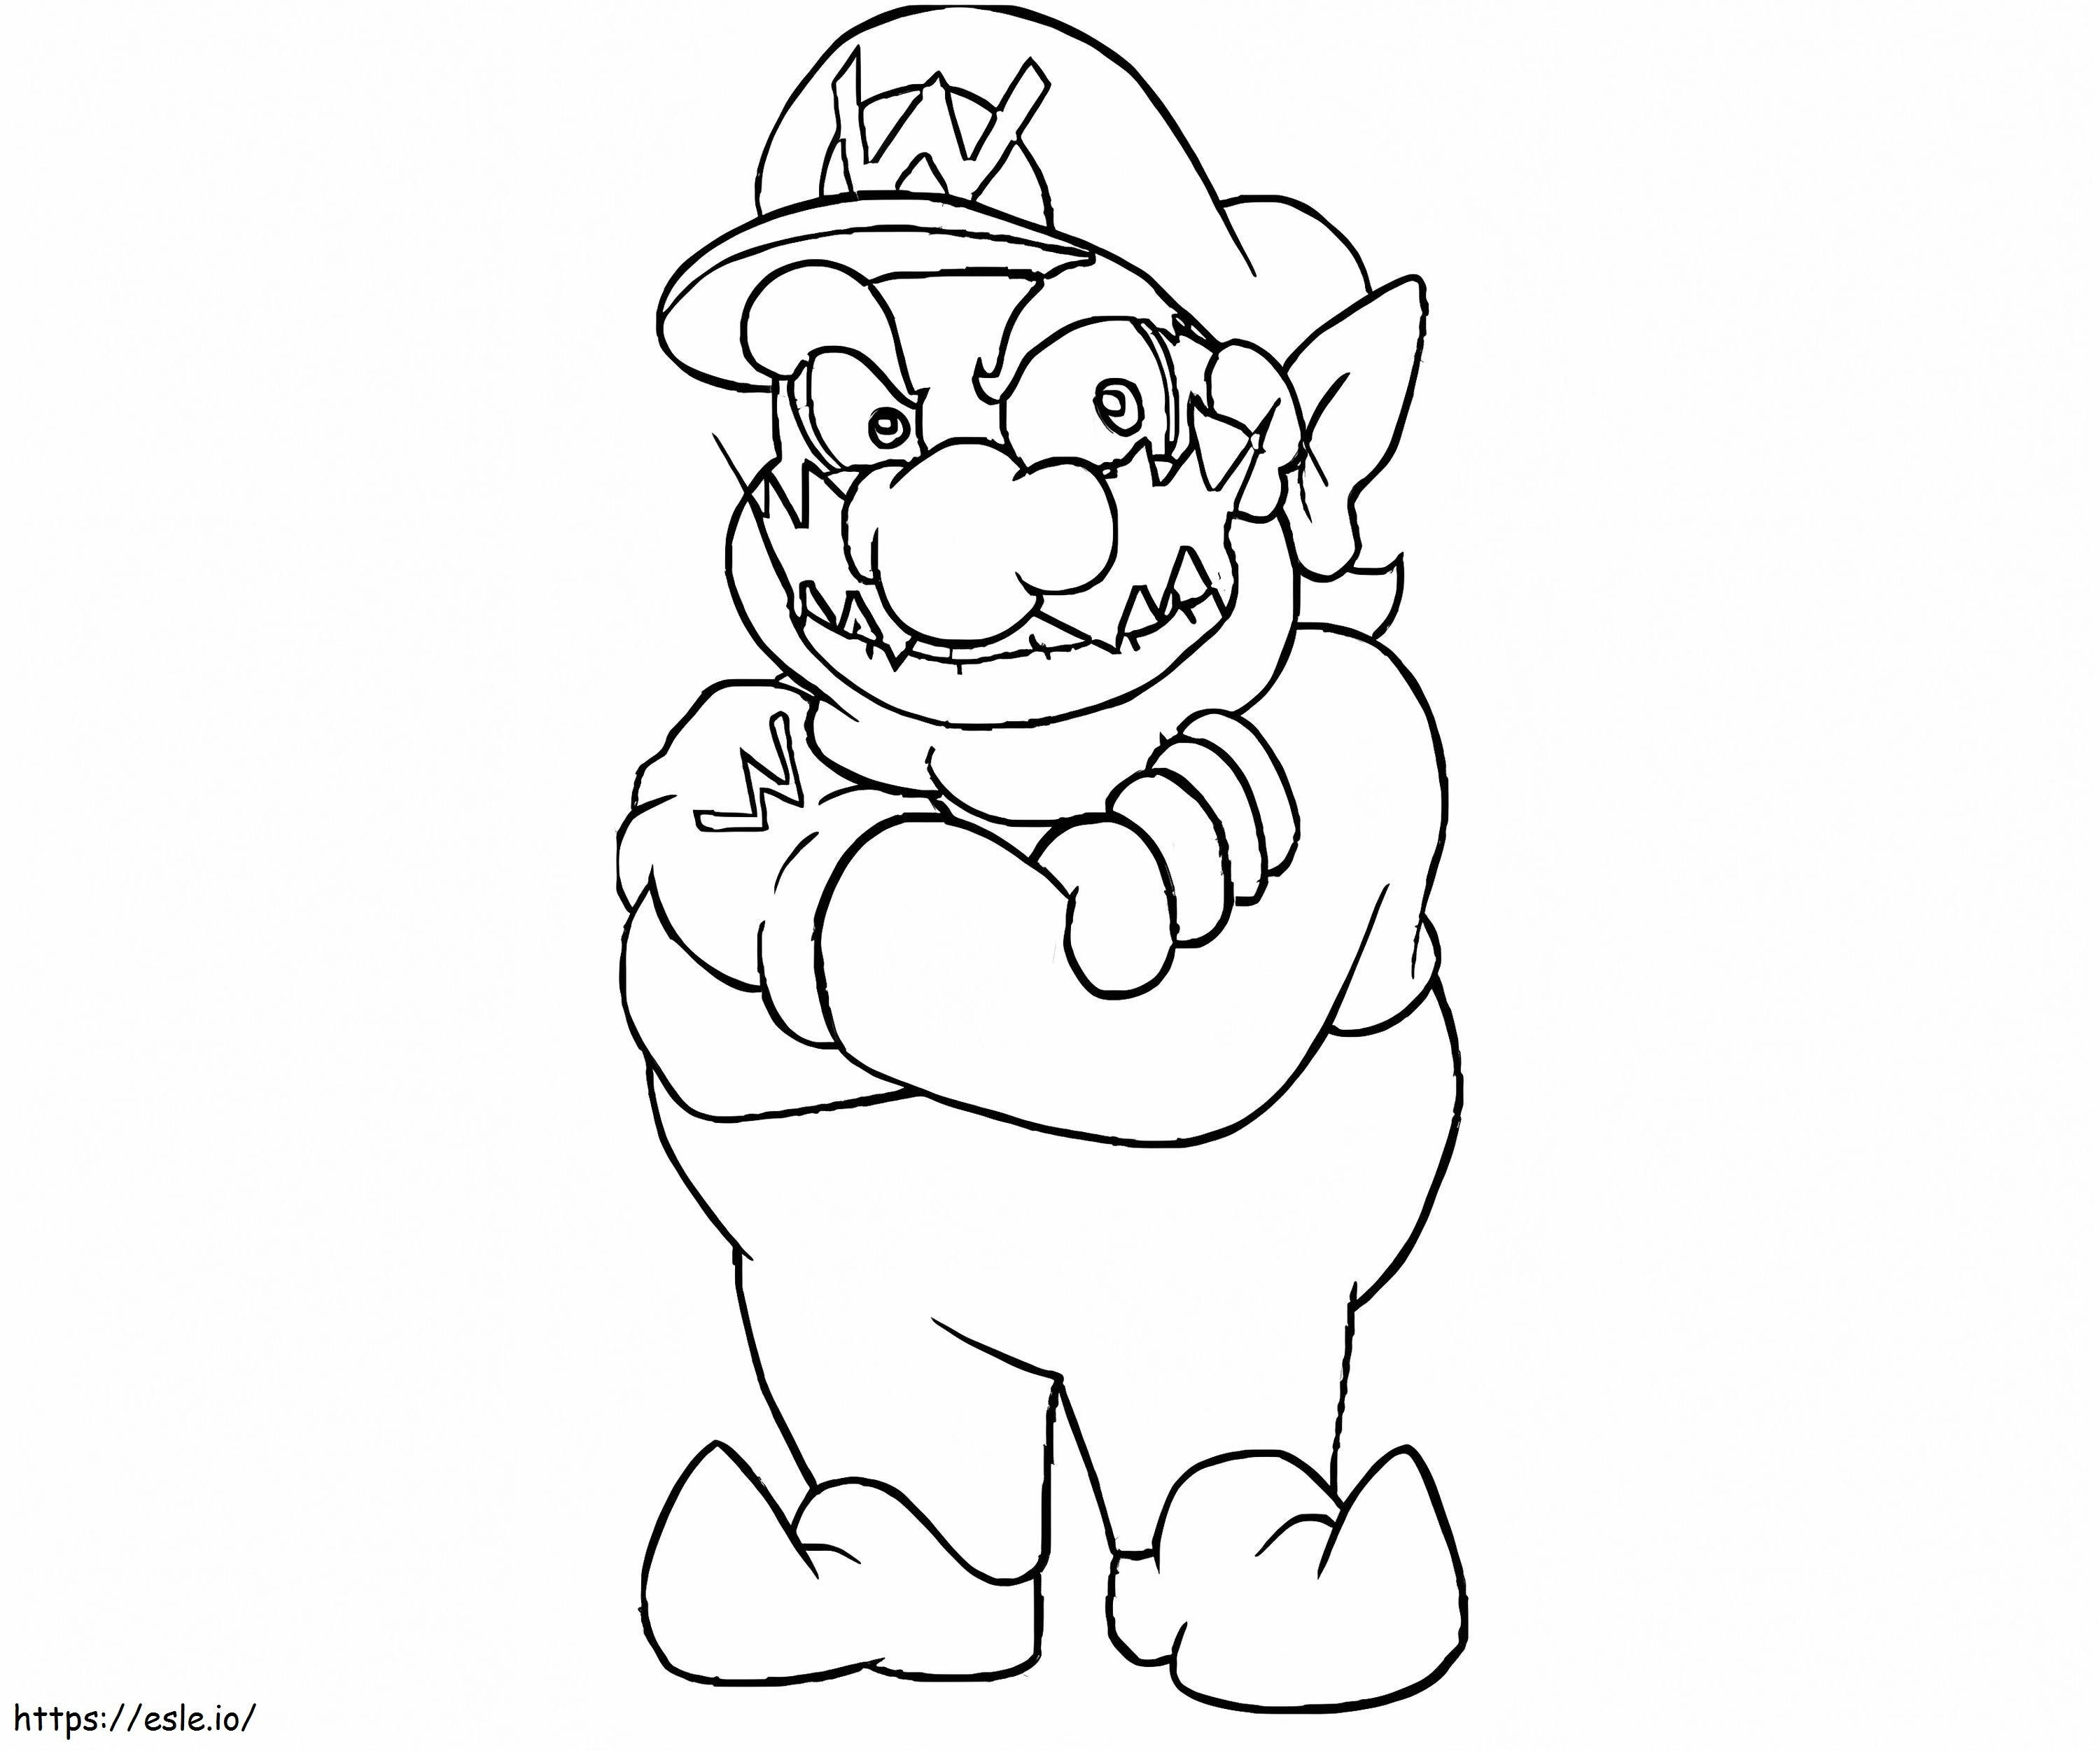 Wario uit Super Mario 4 kleurplaat kleurplaat